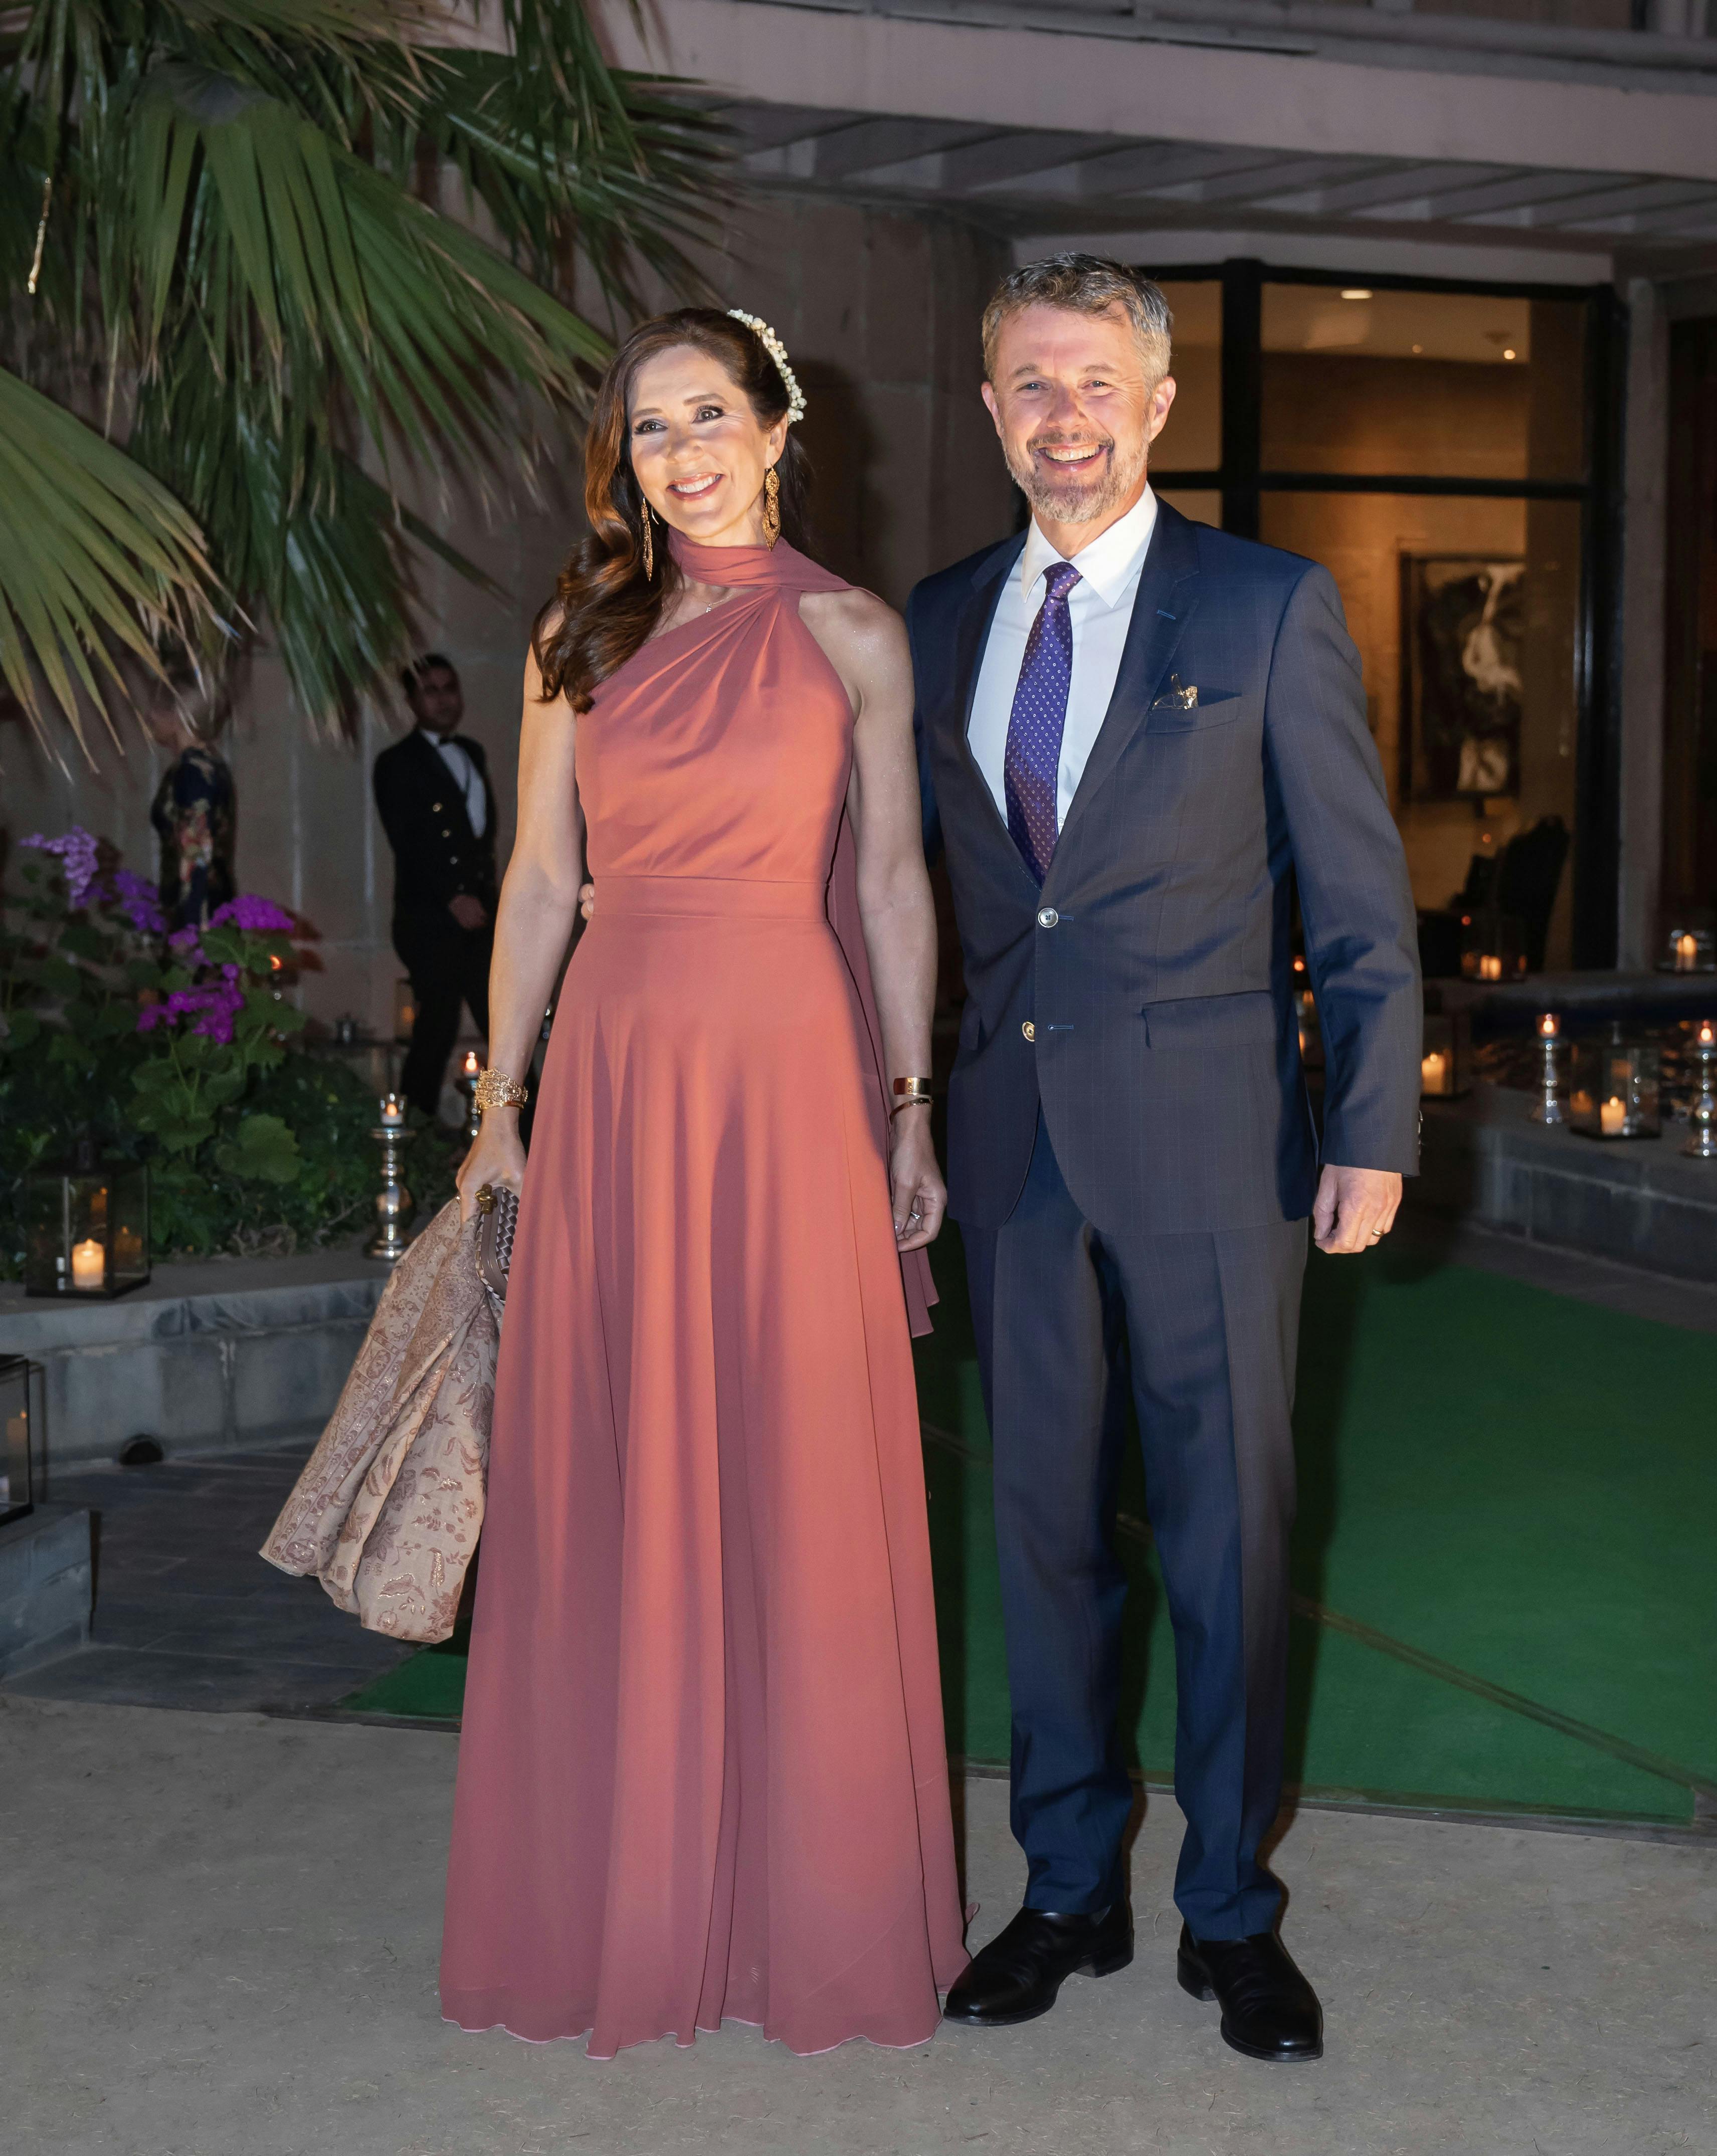 Kronprinseparret strålede begge, da de repræsenterede Danmark til erhversfremstødet i Indien.